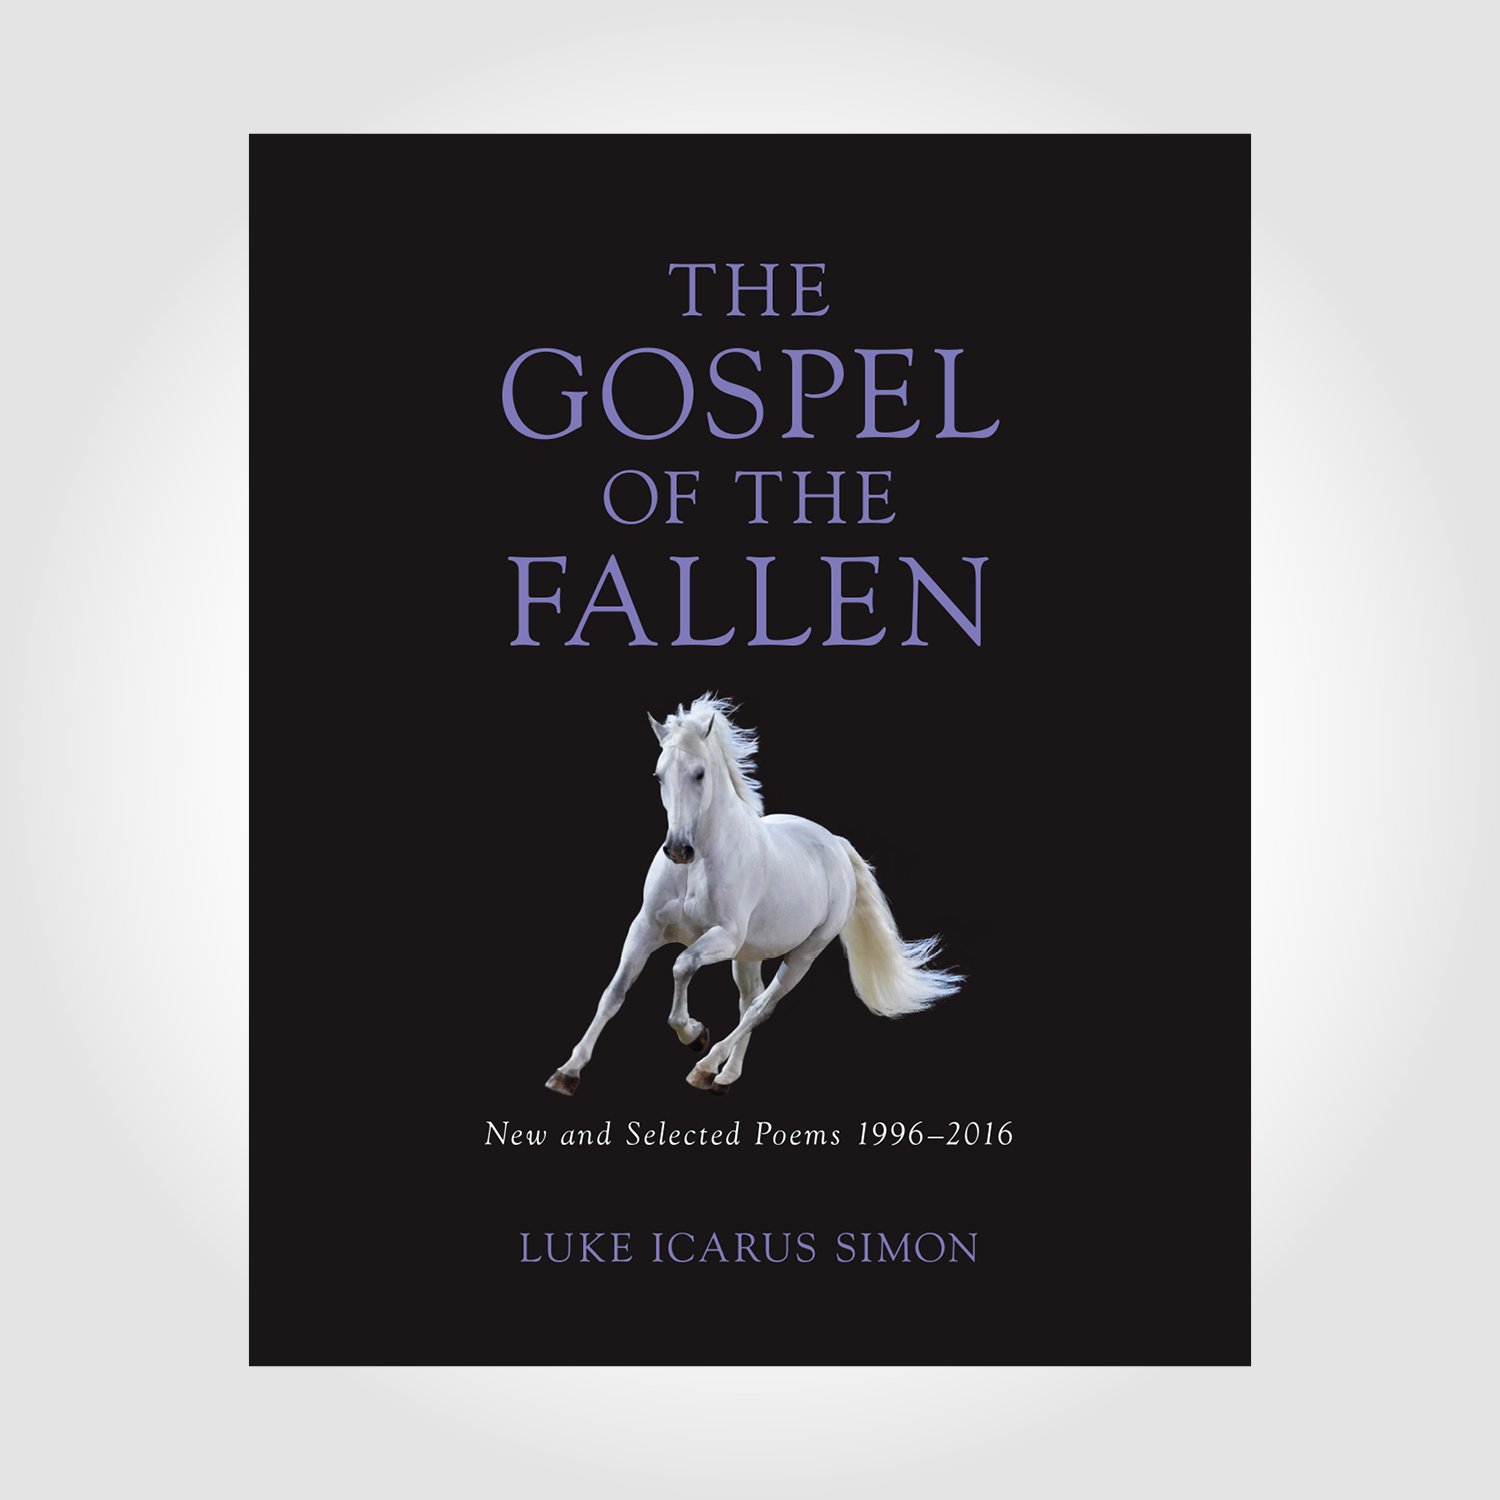 The Gospel of the Fallen